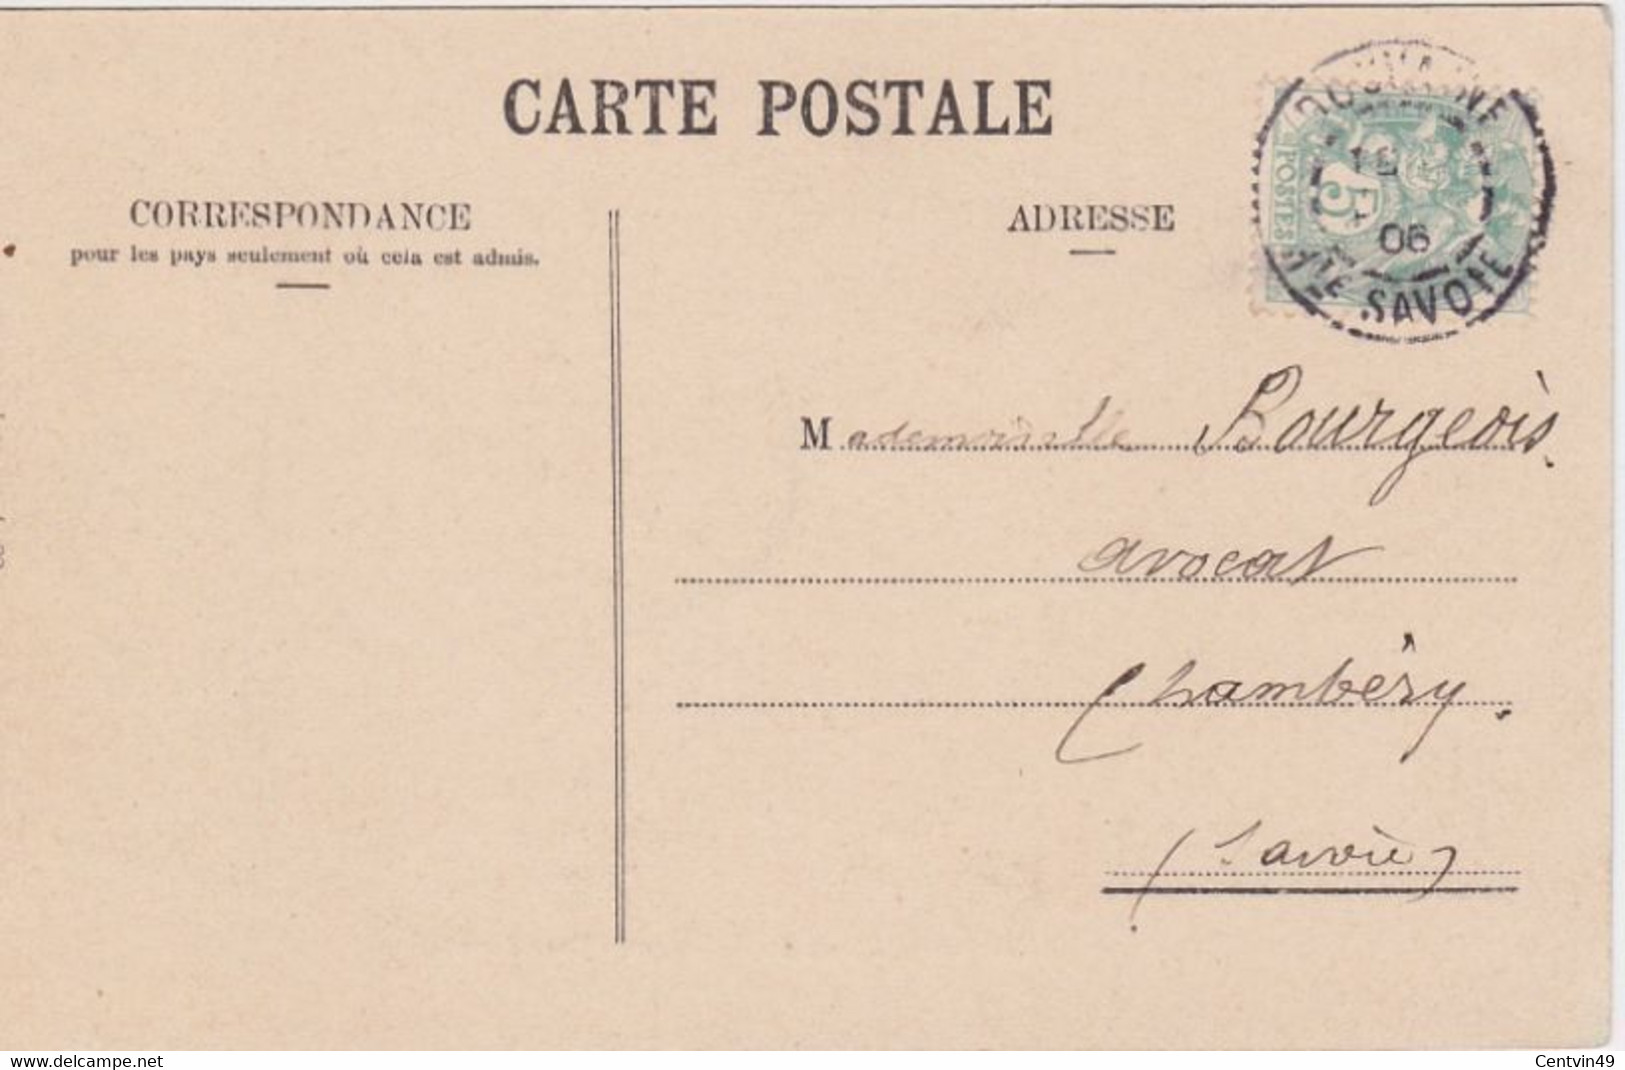 Carte Postale De France - Haute-Savoie (74) - Ballaison Le Château De Ballaison - Dos écrit 1906  Etat Superbe - Douvaine